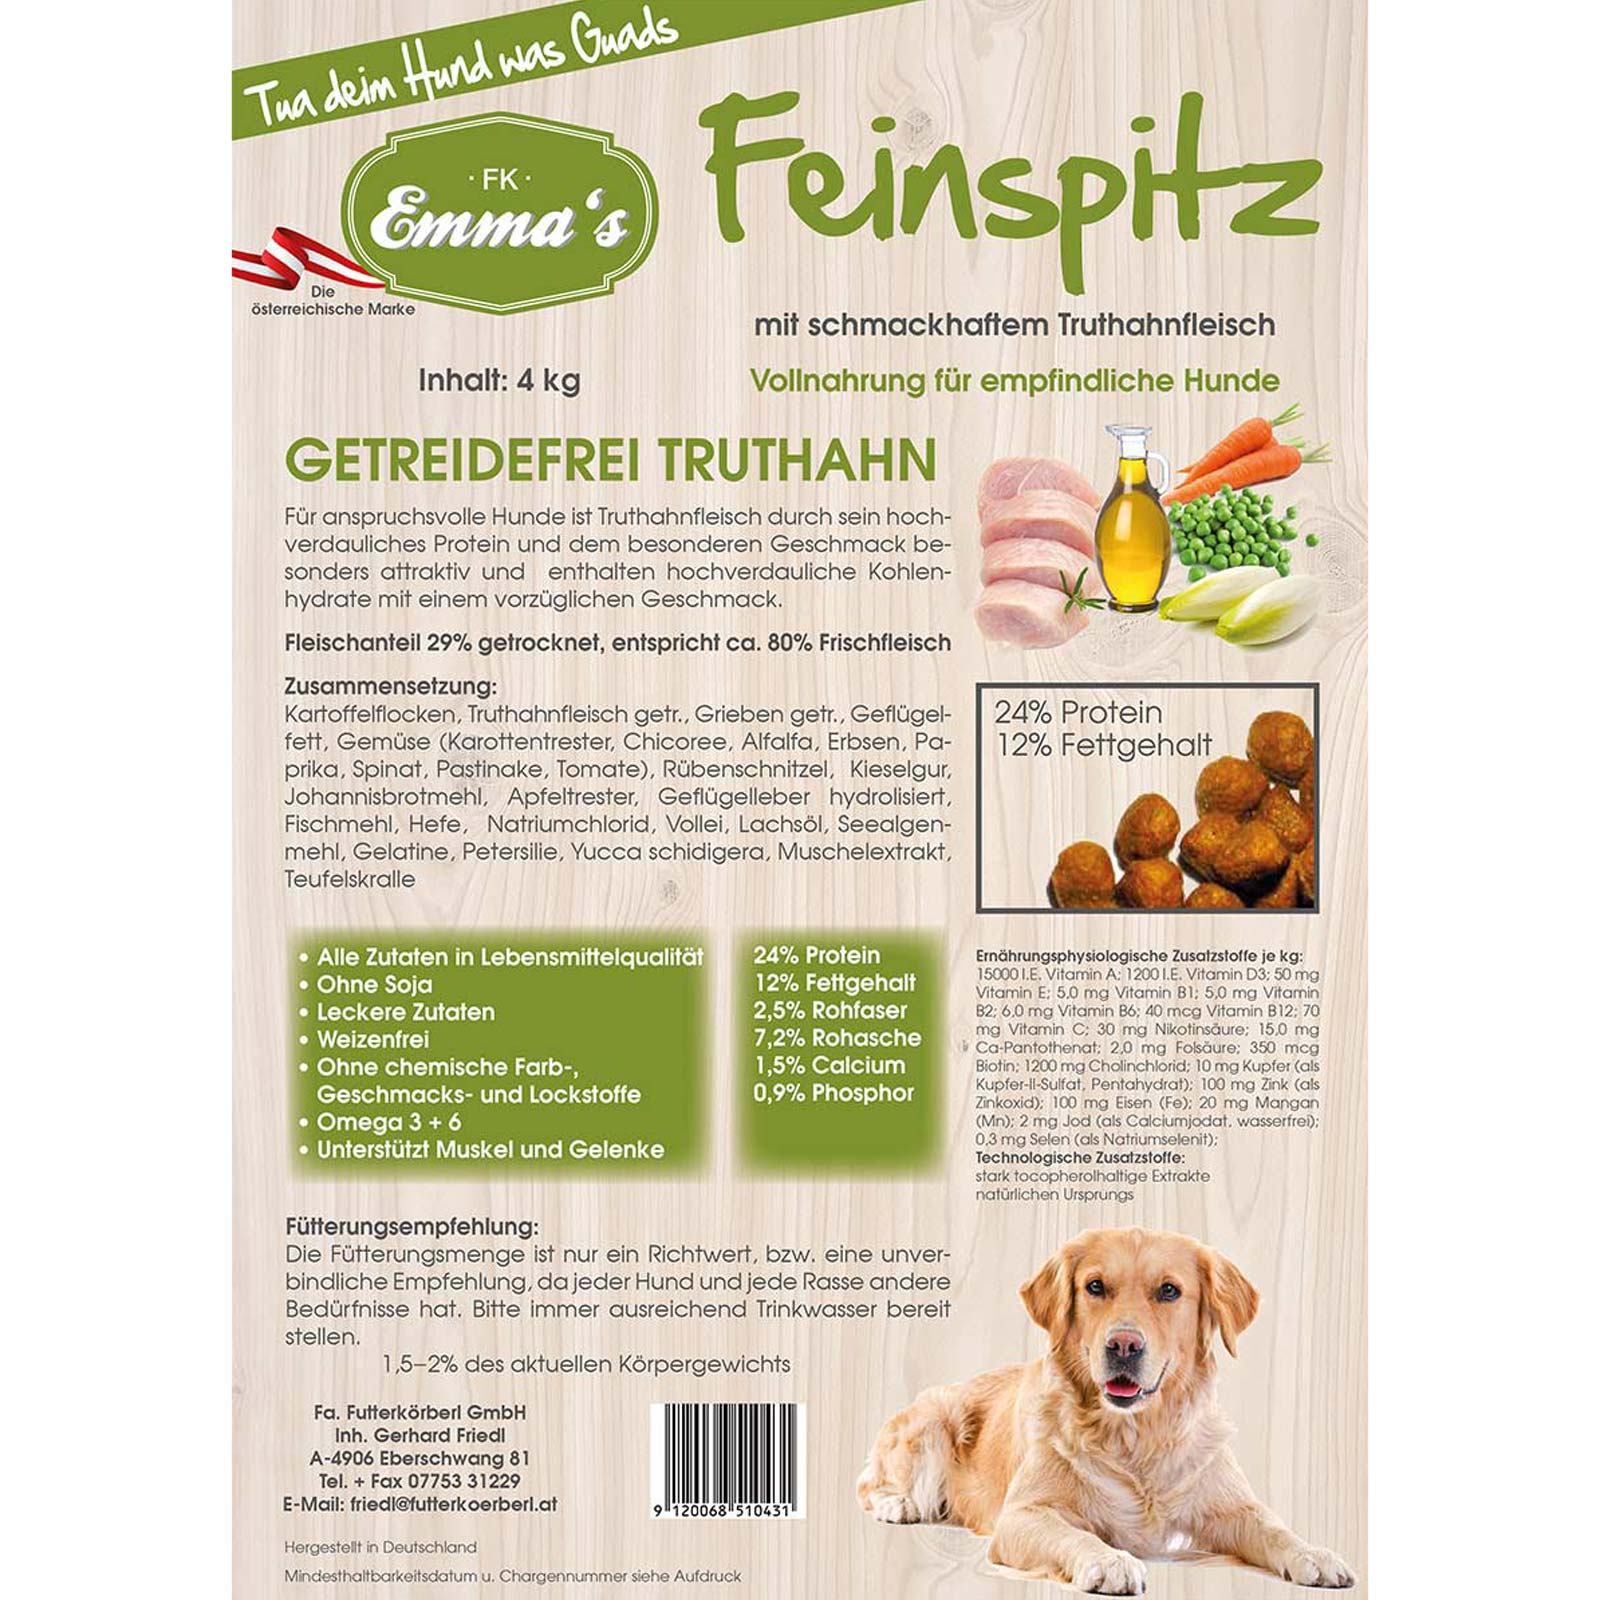 Emmas Dog food Feinspitz turkey grain-free 0,8 kg